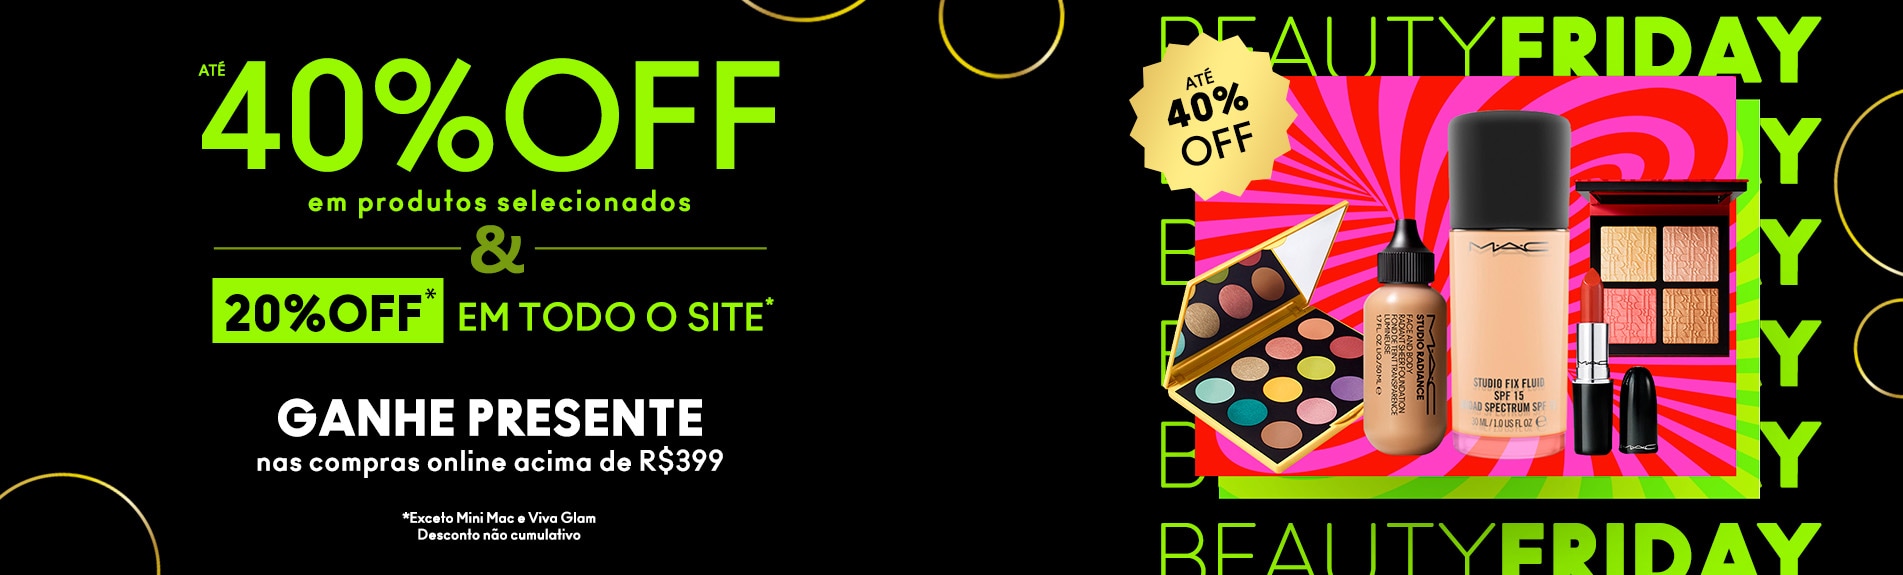 Black Friday - MAC 40% OFF em produtos selecionados e 20% off em todo o site*. Ganhe presente nas compras online acima de R$399.